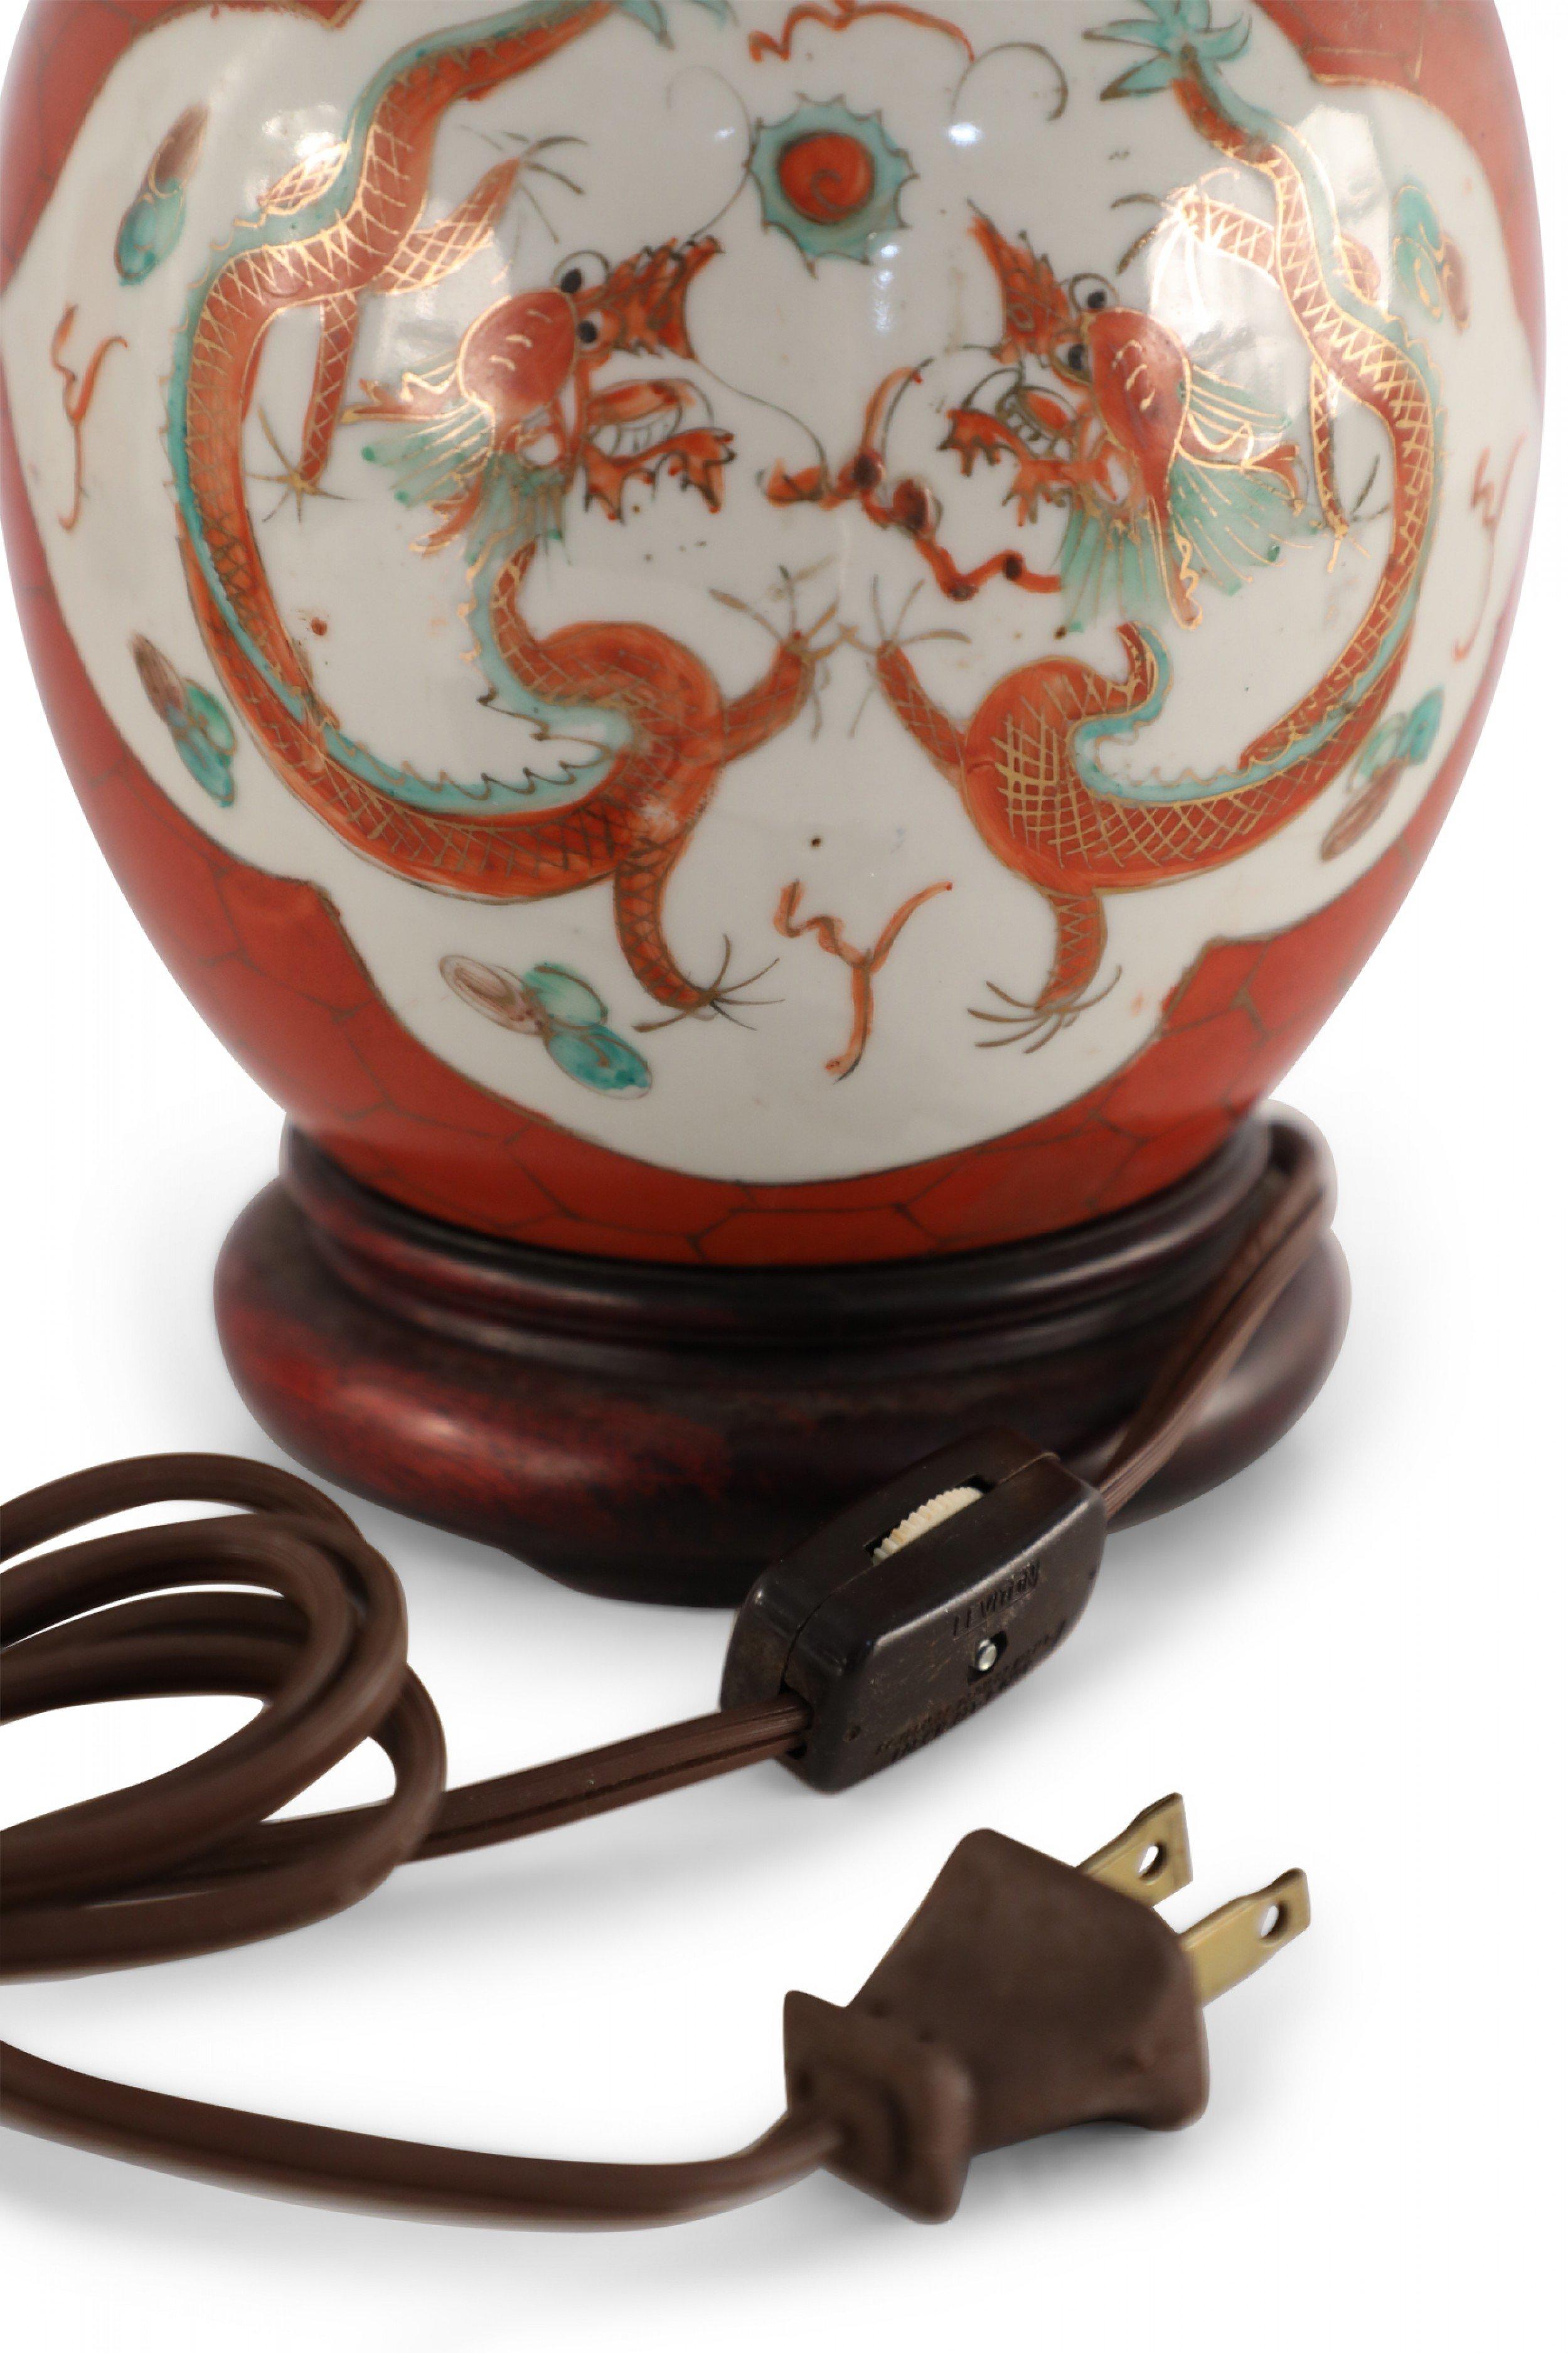 Lampe de table chinoise ancienne (début du XXe siècle) composée d'un vase rond en porcelaine lustrée à fond hexagonal à motifs orange et or sur deux cartouches blancs représentant des dragons, monté sur une base en bois avec des ferrures en